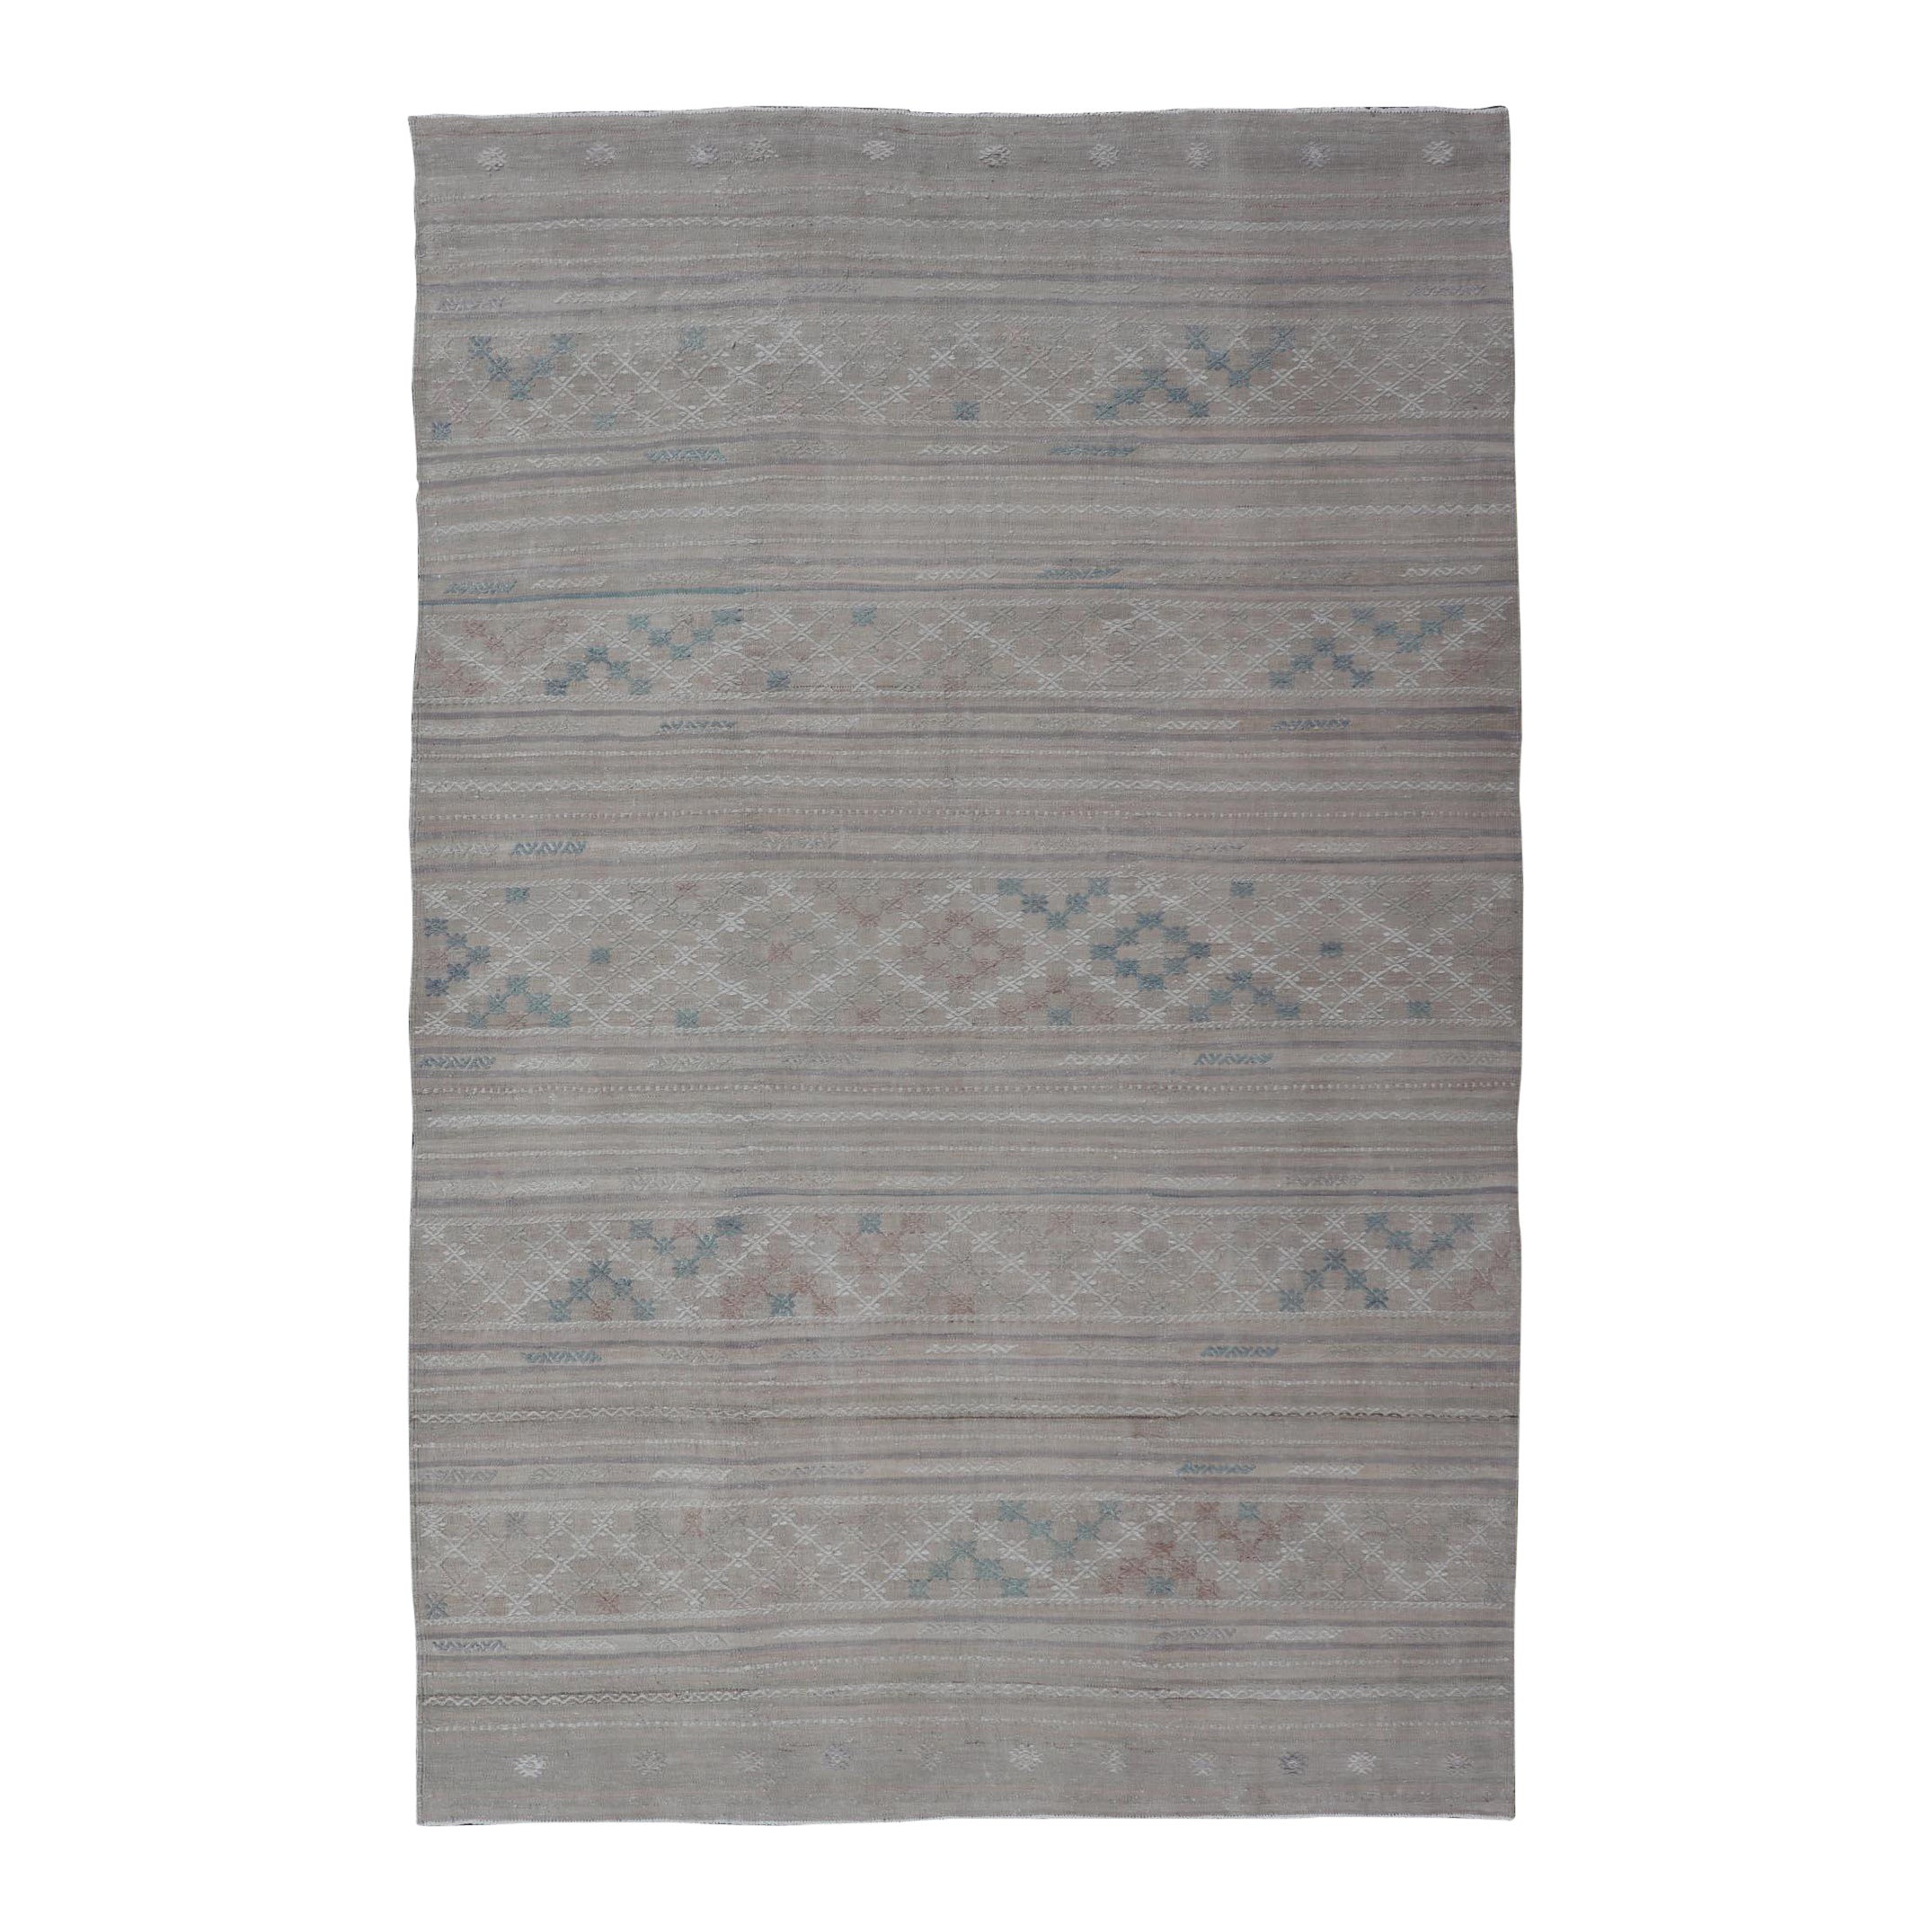 Türkischer Kelim-Teppich im Vintage-Stil mit neutralen horizontalen Streifen und geometrischen Designs